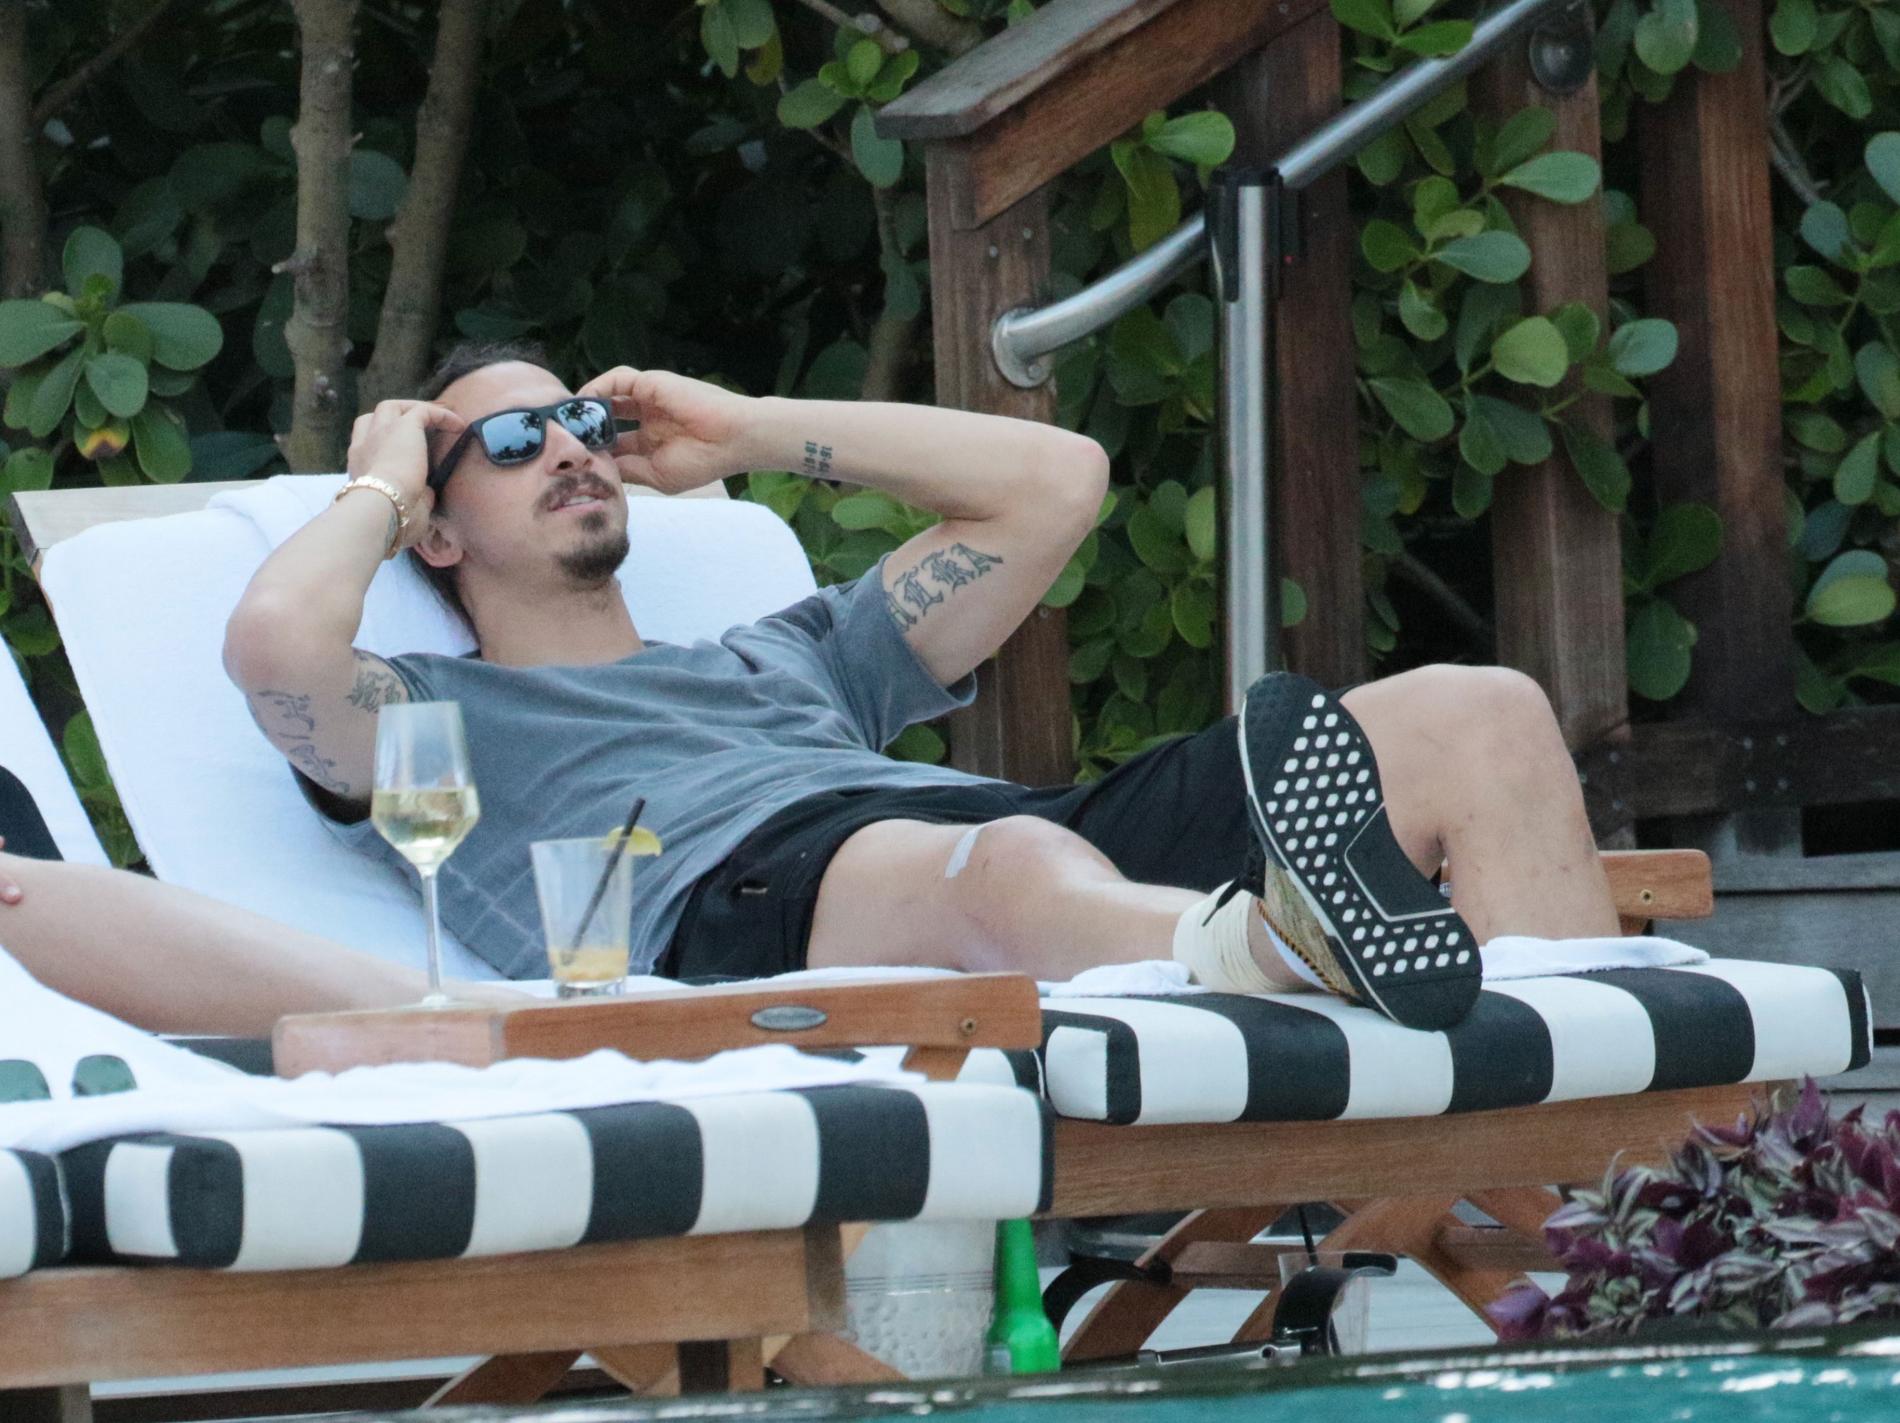 LADDAR FÖR REHAB. Zlatan Ibrahimovic sågs vila upp sig med vänner på ett hotell i Miami, USA, i väntan på sin rehabträning efter operationen.